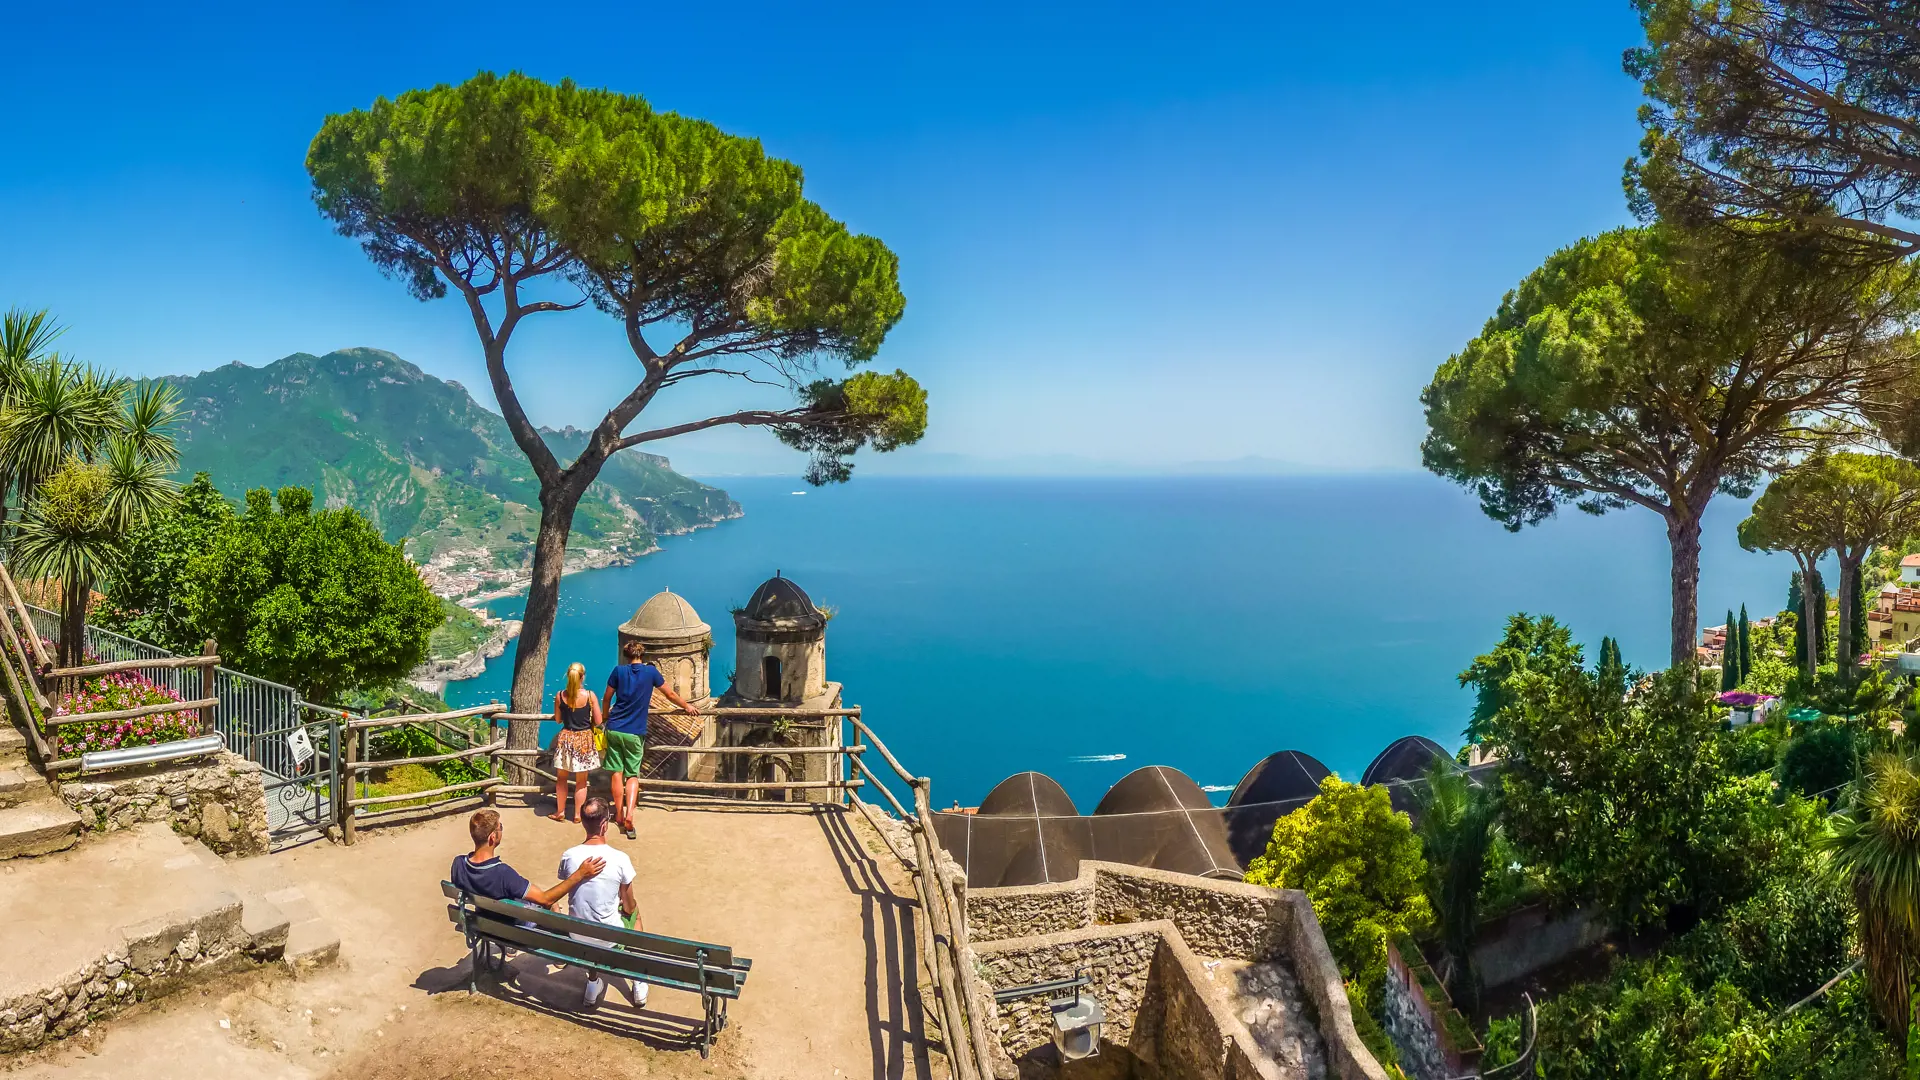 Njut av utsikten över Amalfikusten från en bänk i Villa Rufolo